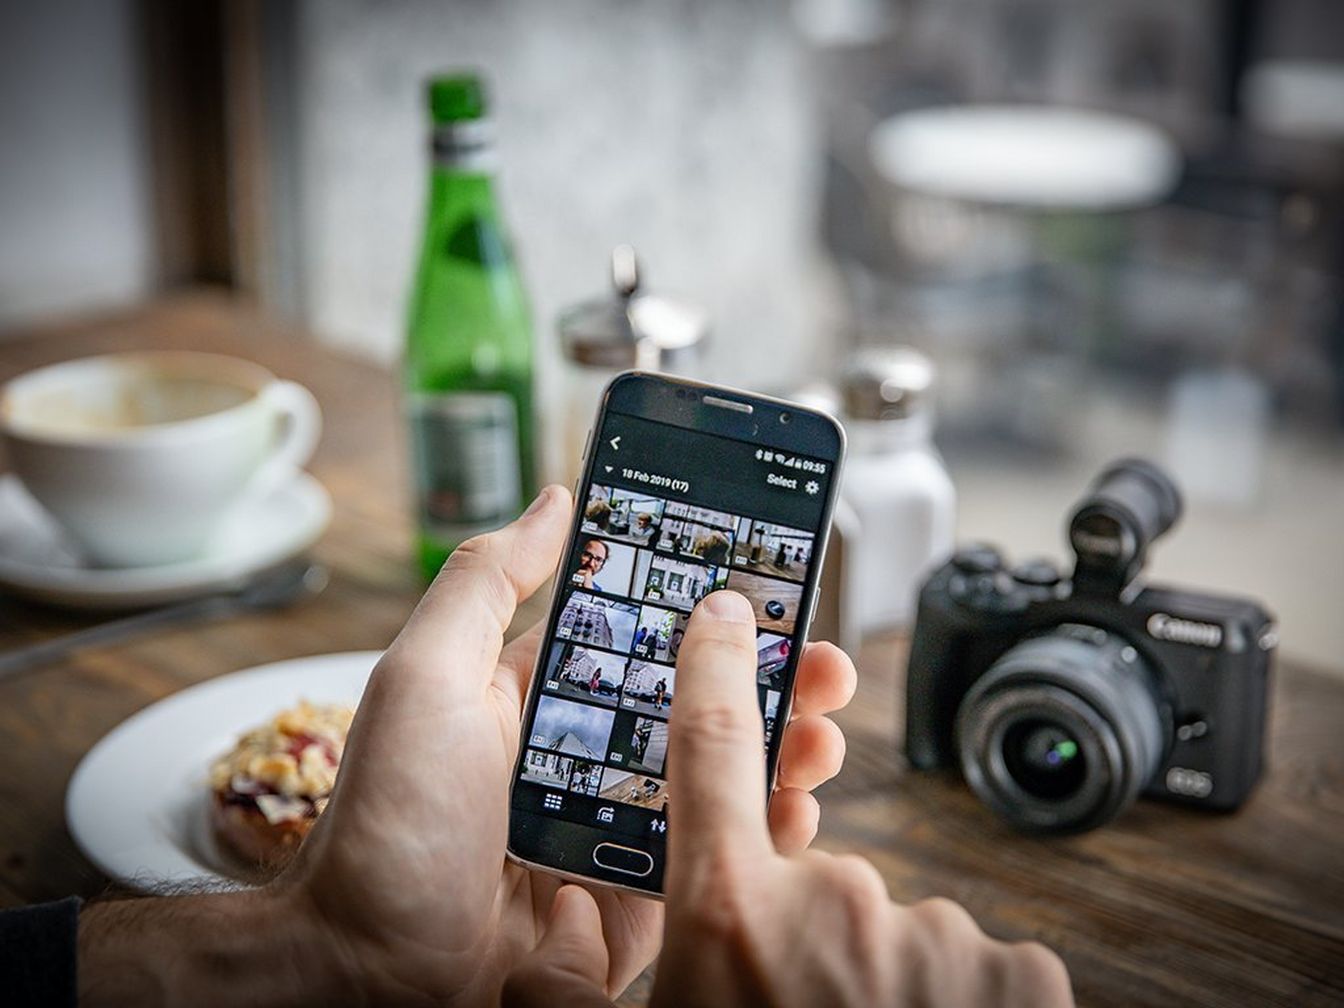 يدان تحملان هاتفًا ذكيًا عليه صور في تطبيق Camera Connect، وتظهر في الخلفية الكاميرا على الطاولة مع الطعام والمشروبات.